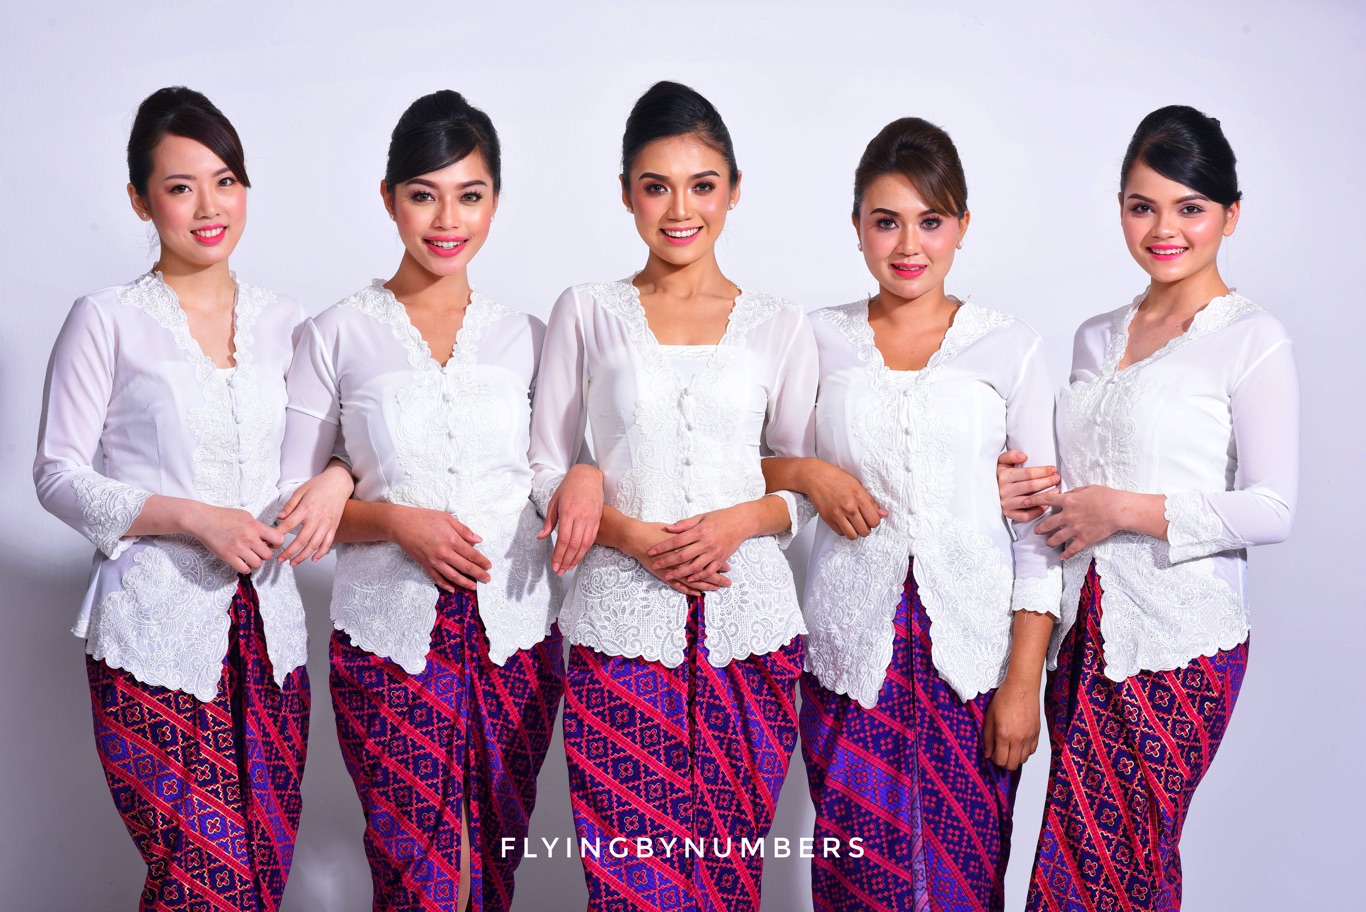 5 flight attendants